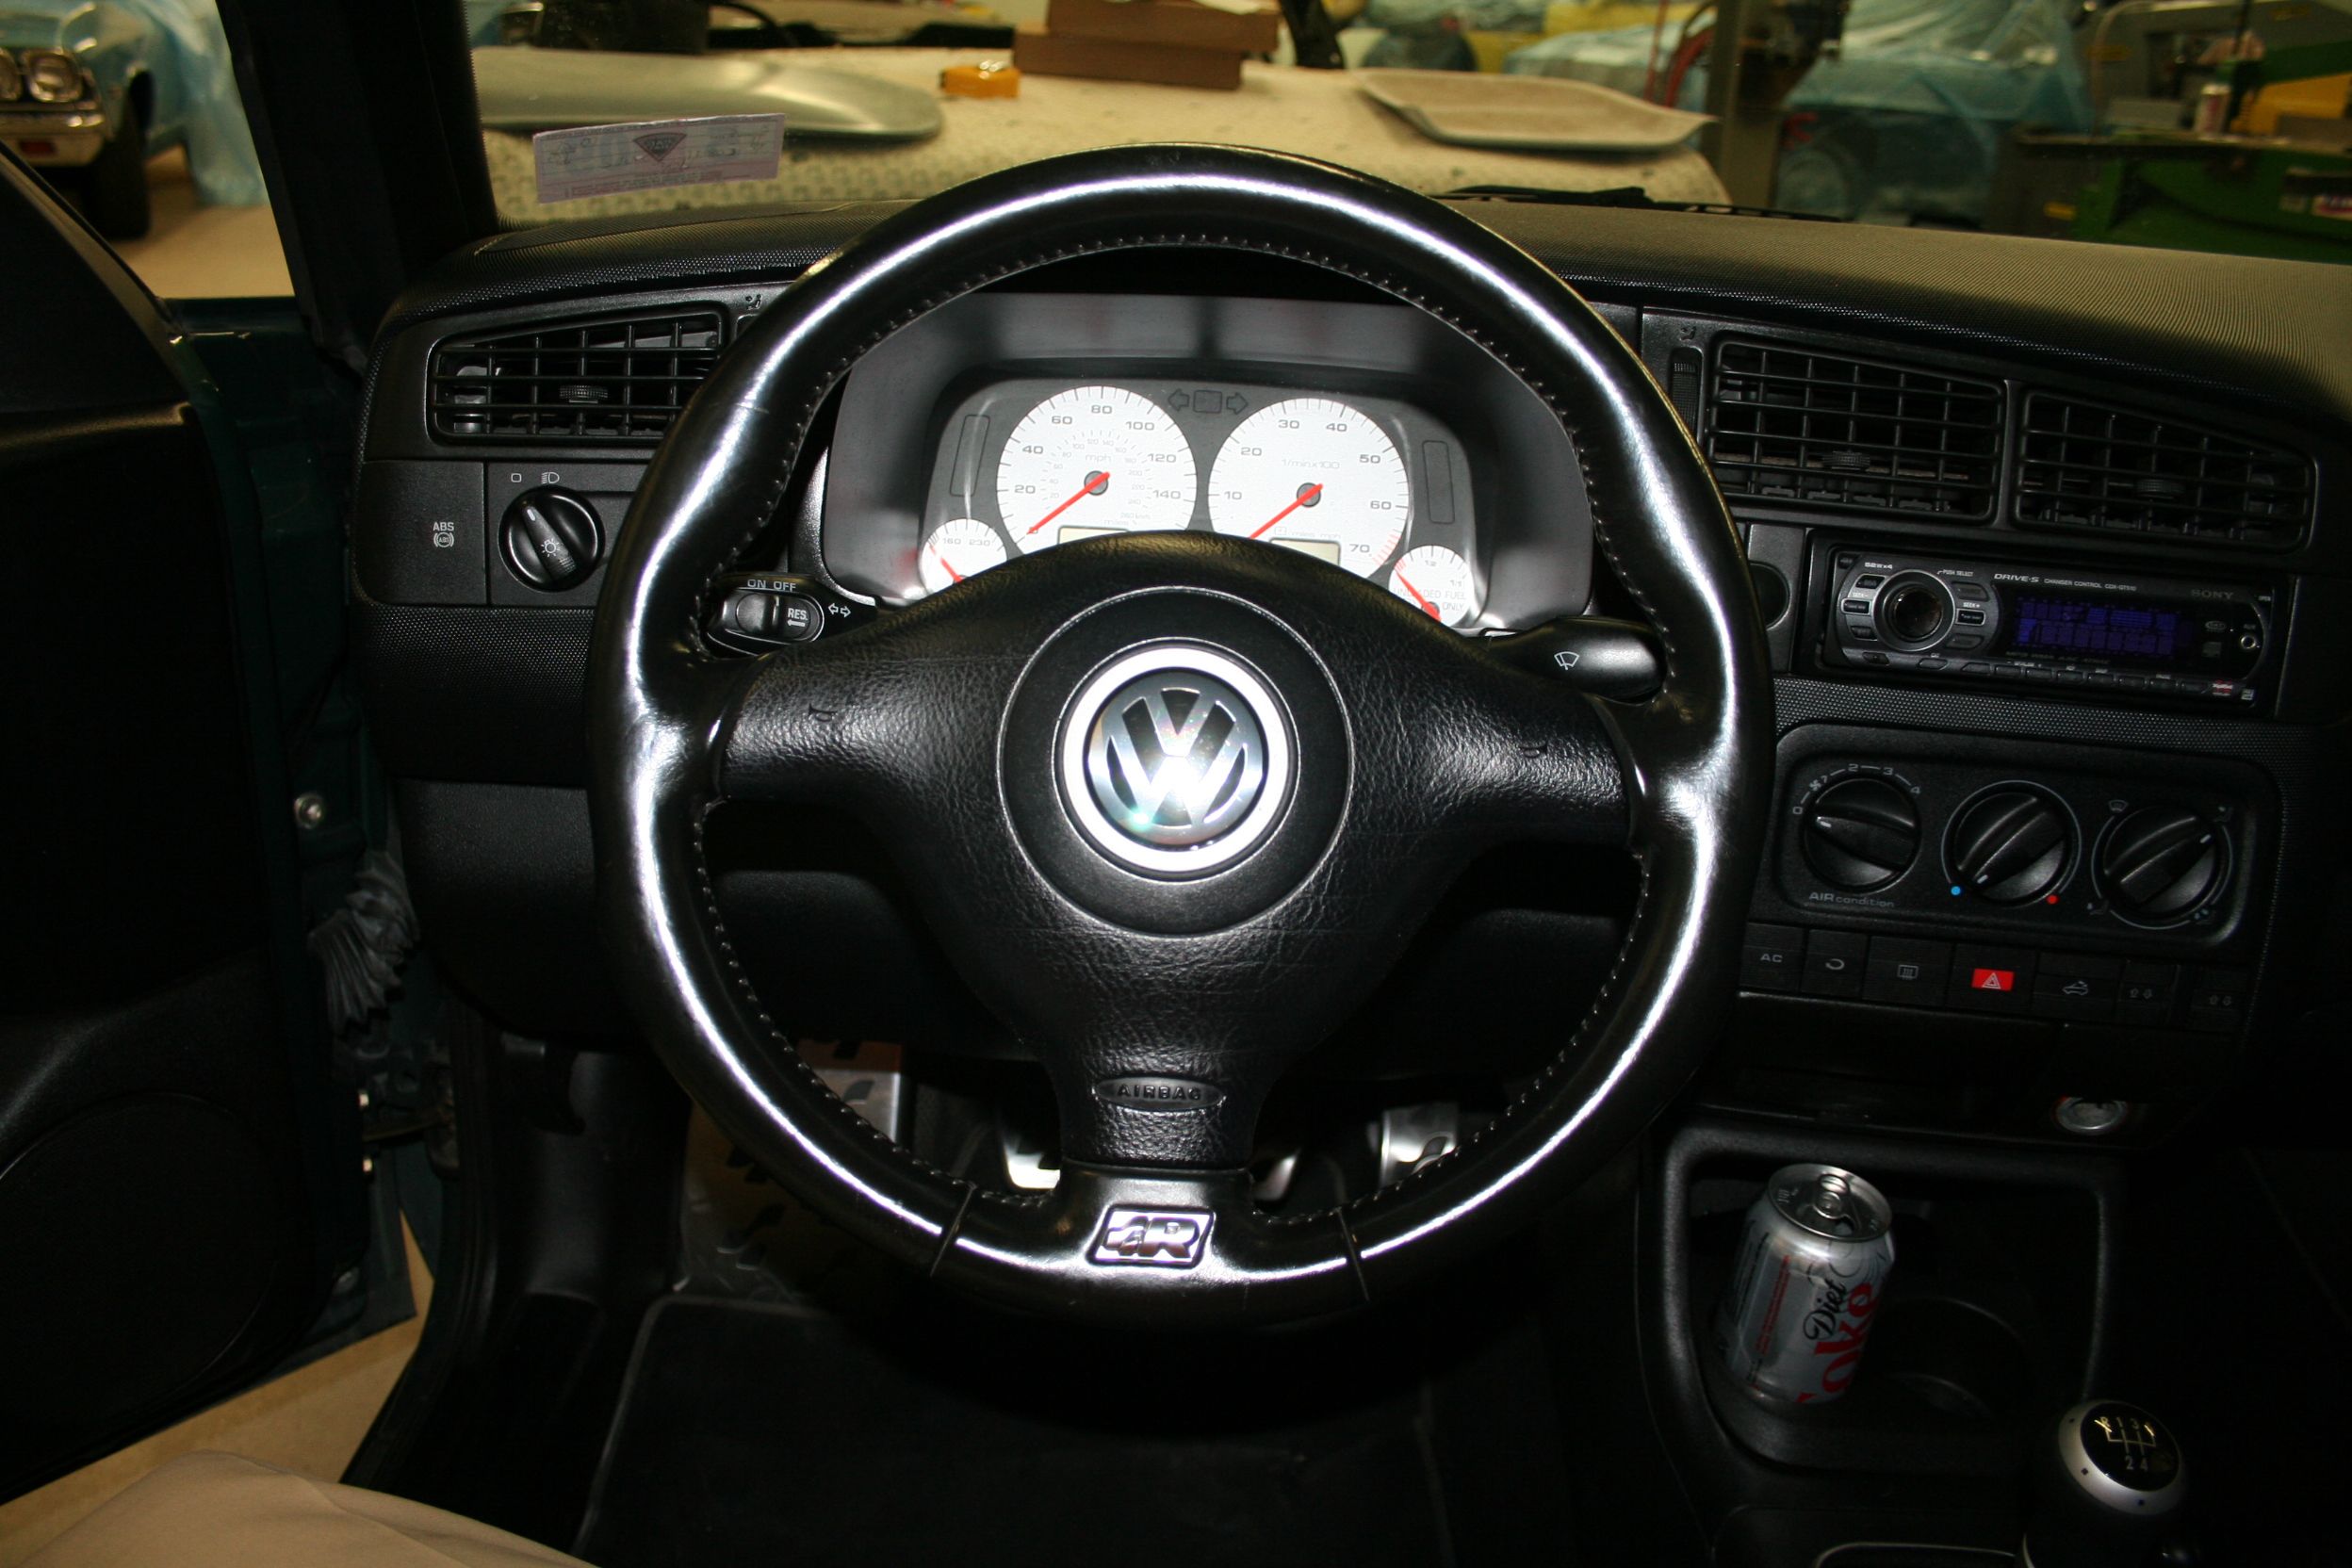 The MK4 Volkswagen R32 Interior 